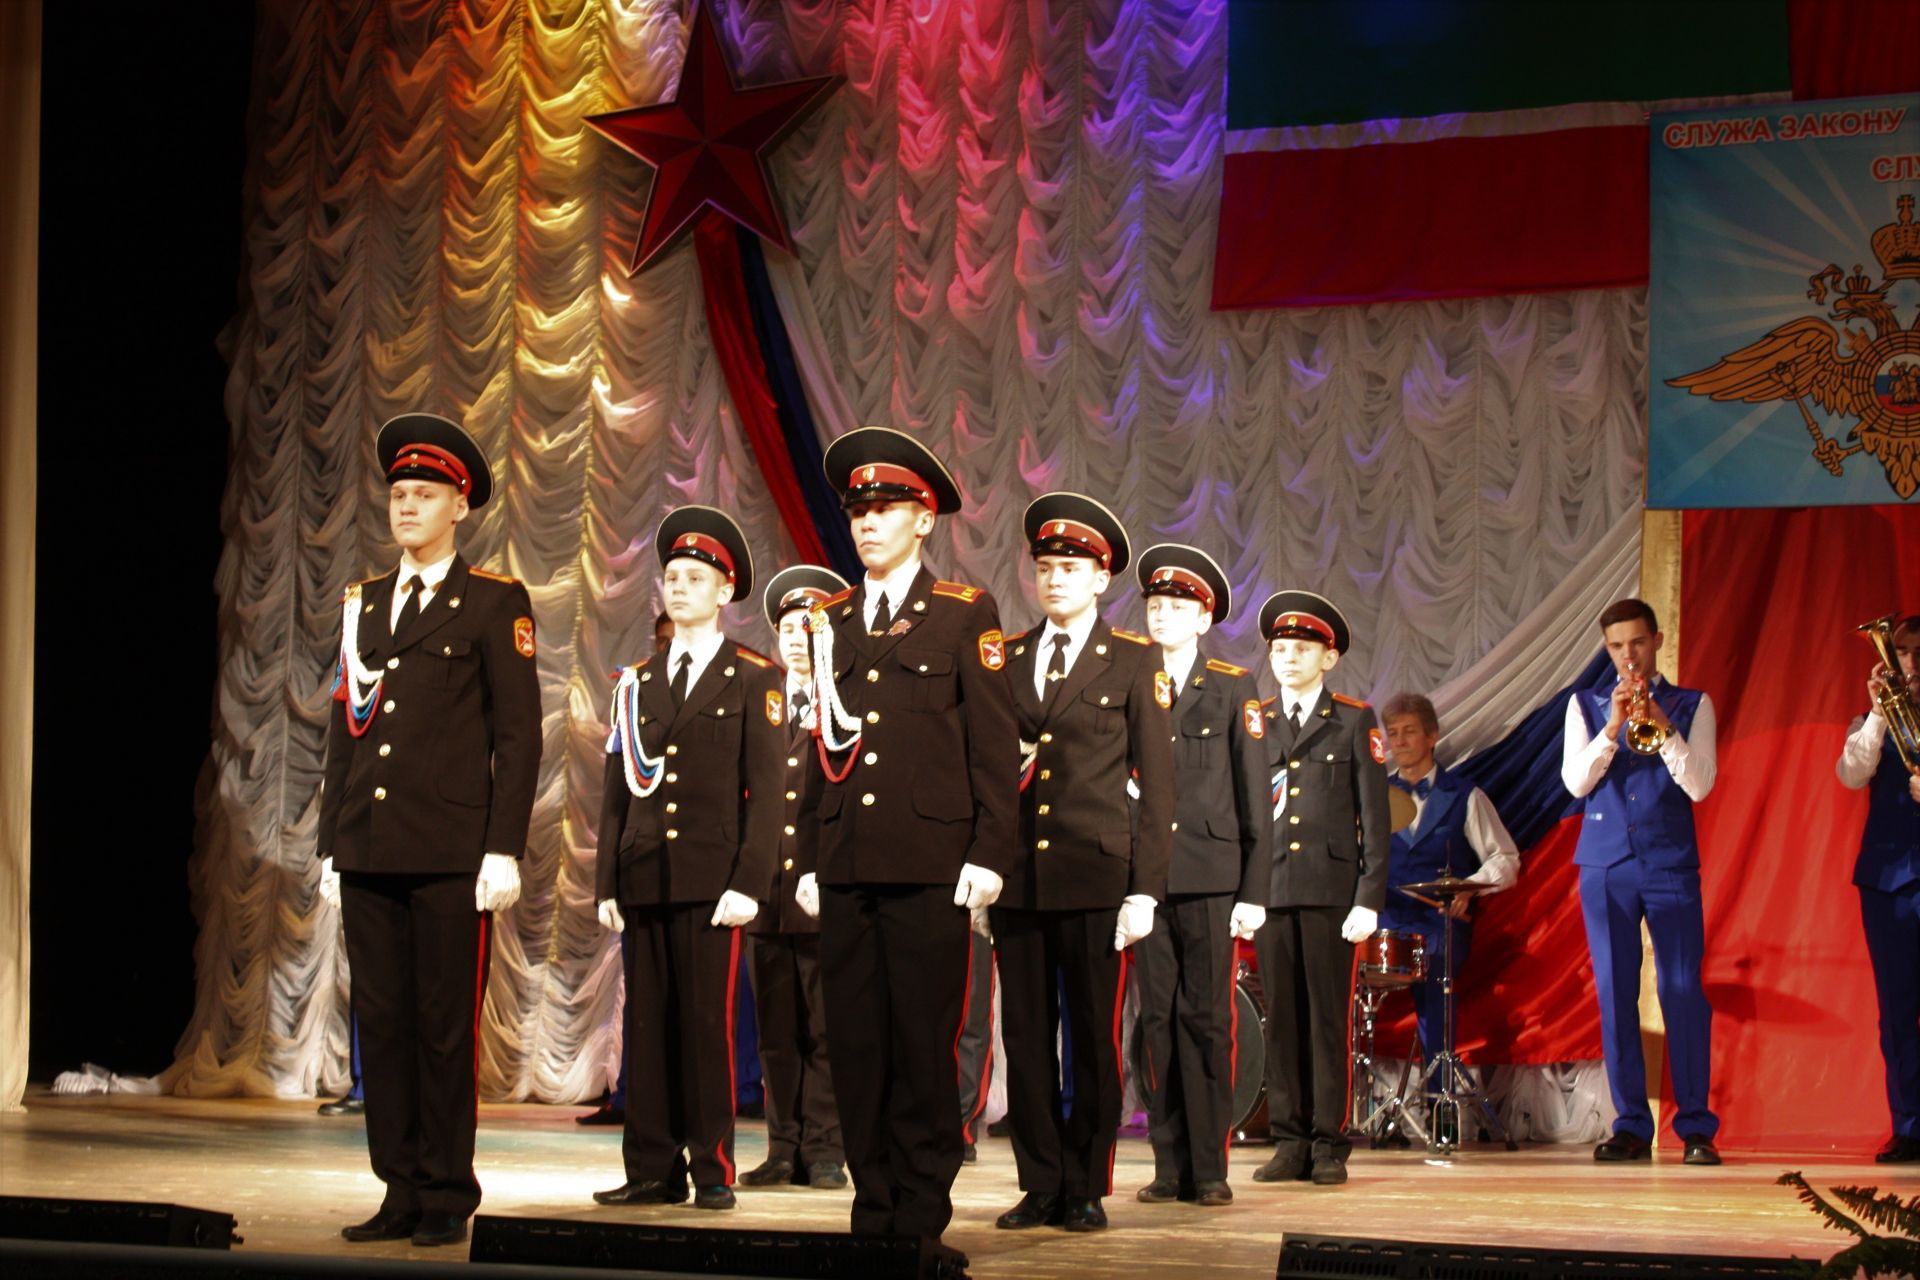 Сто лет на страже закона: Чистопольская полиция отметила юбилей службы праздничным концертом (ФОТОРЕПОРТАЖ)